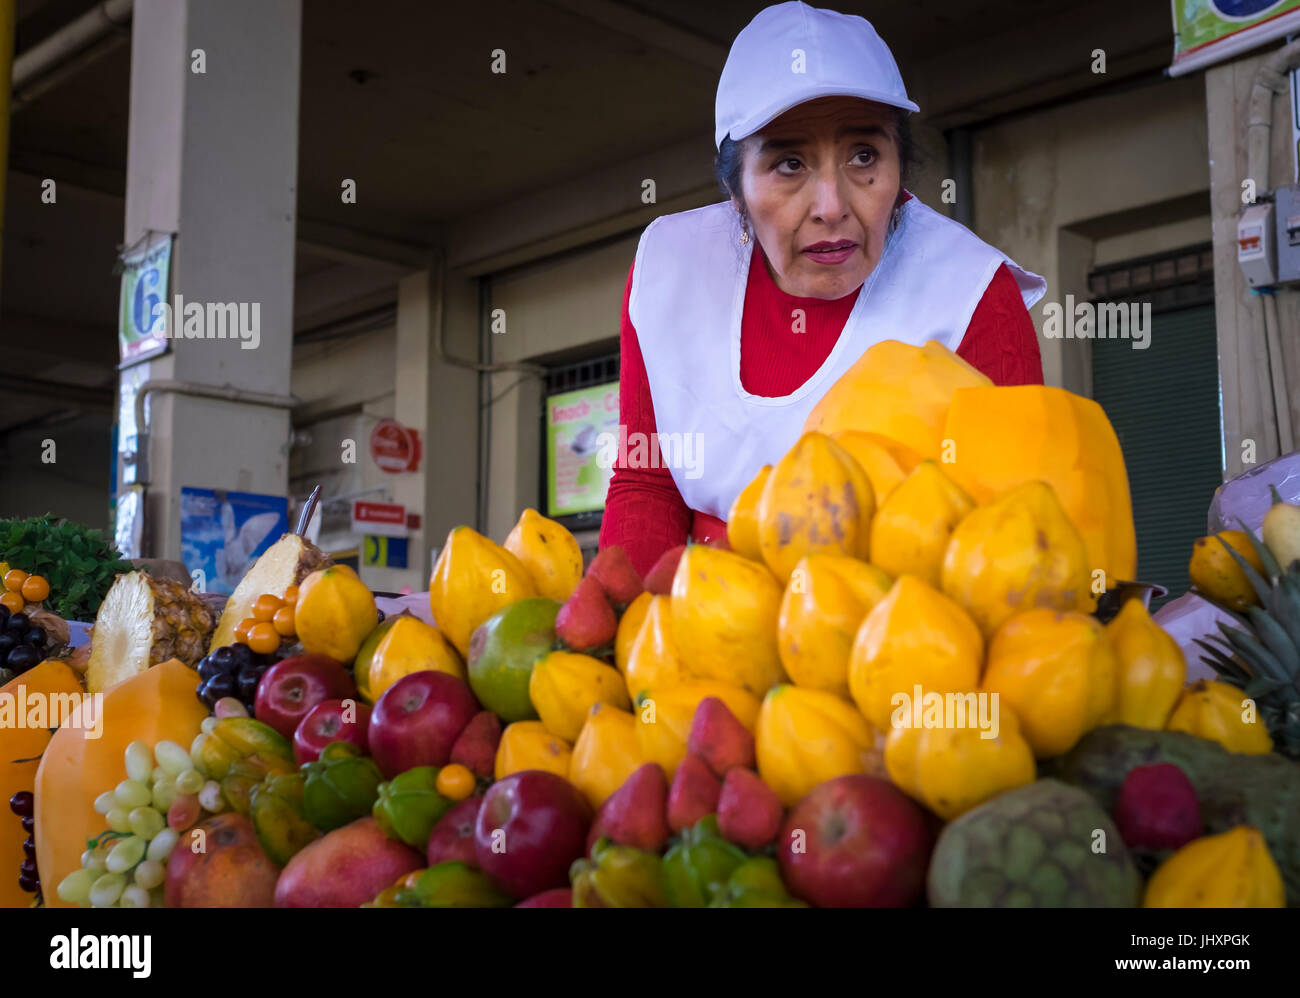 AREQUIPA, Perù - circa aprile 2014: Merchant in uno dei succhi di frutta si spegne al San Camilo mercato in Arequipa. Arequipa è la seconda città del Perù da po Foto Stock